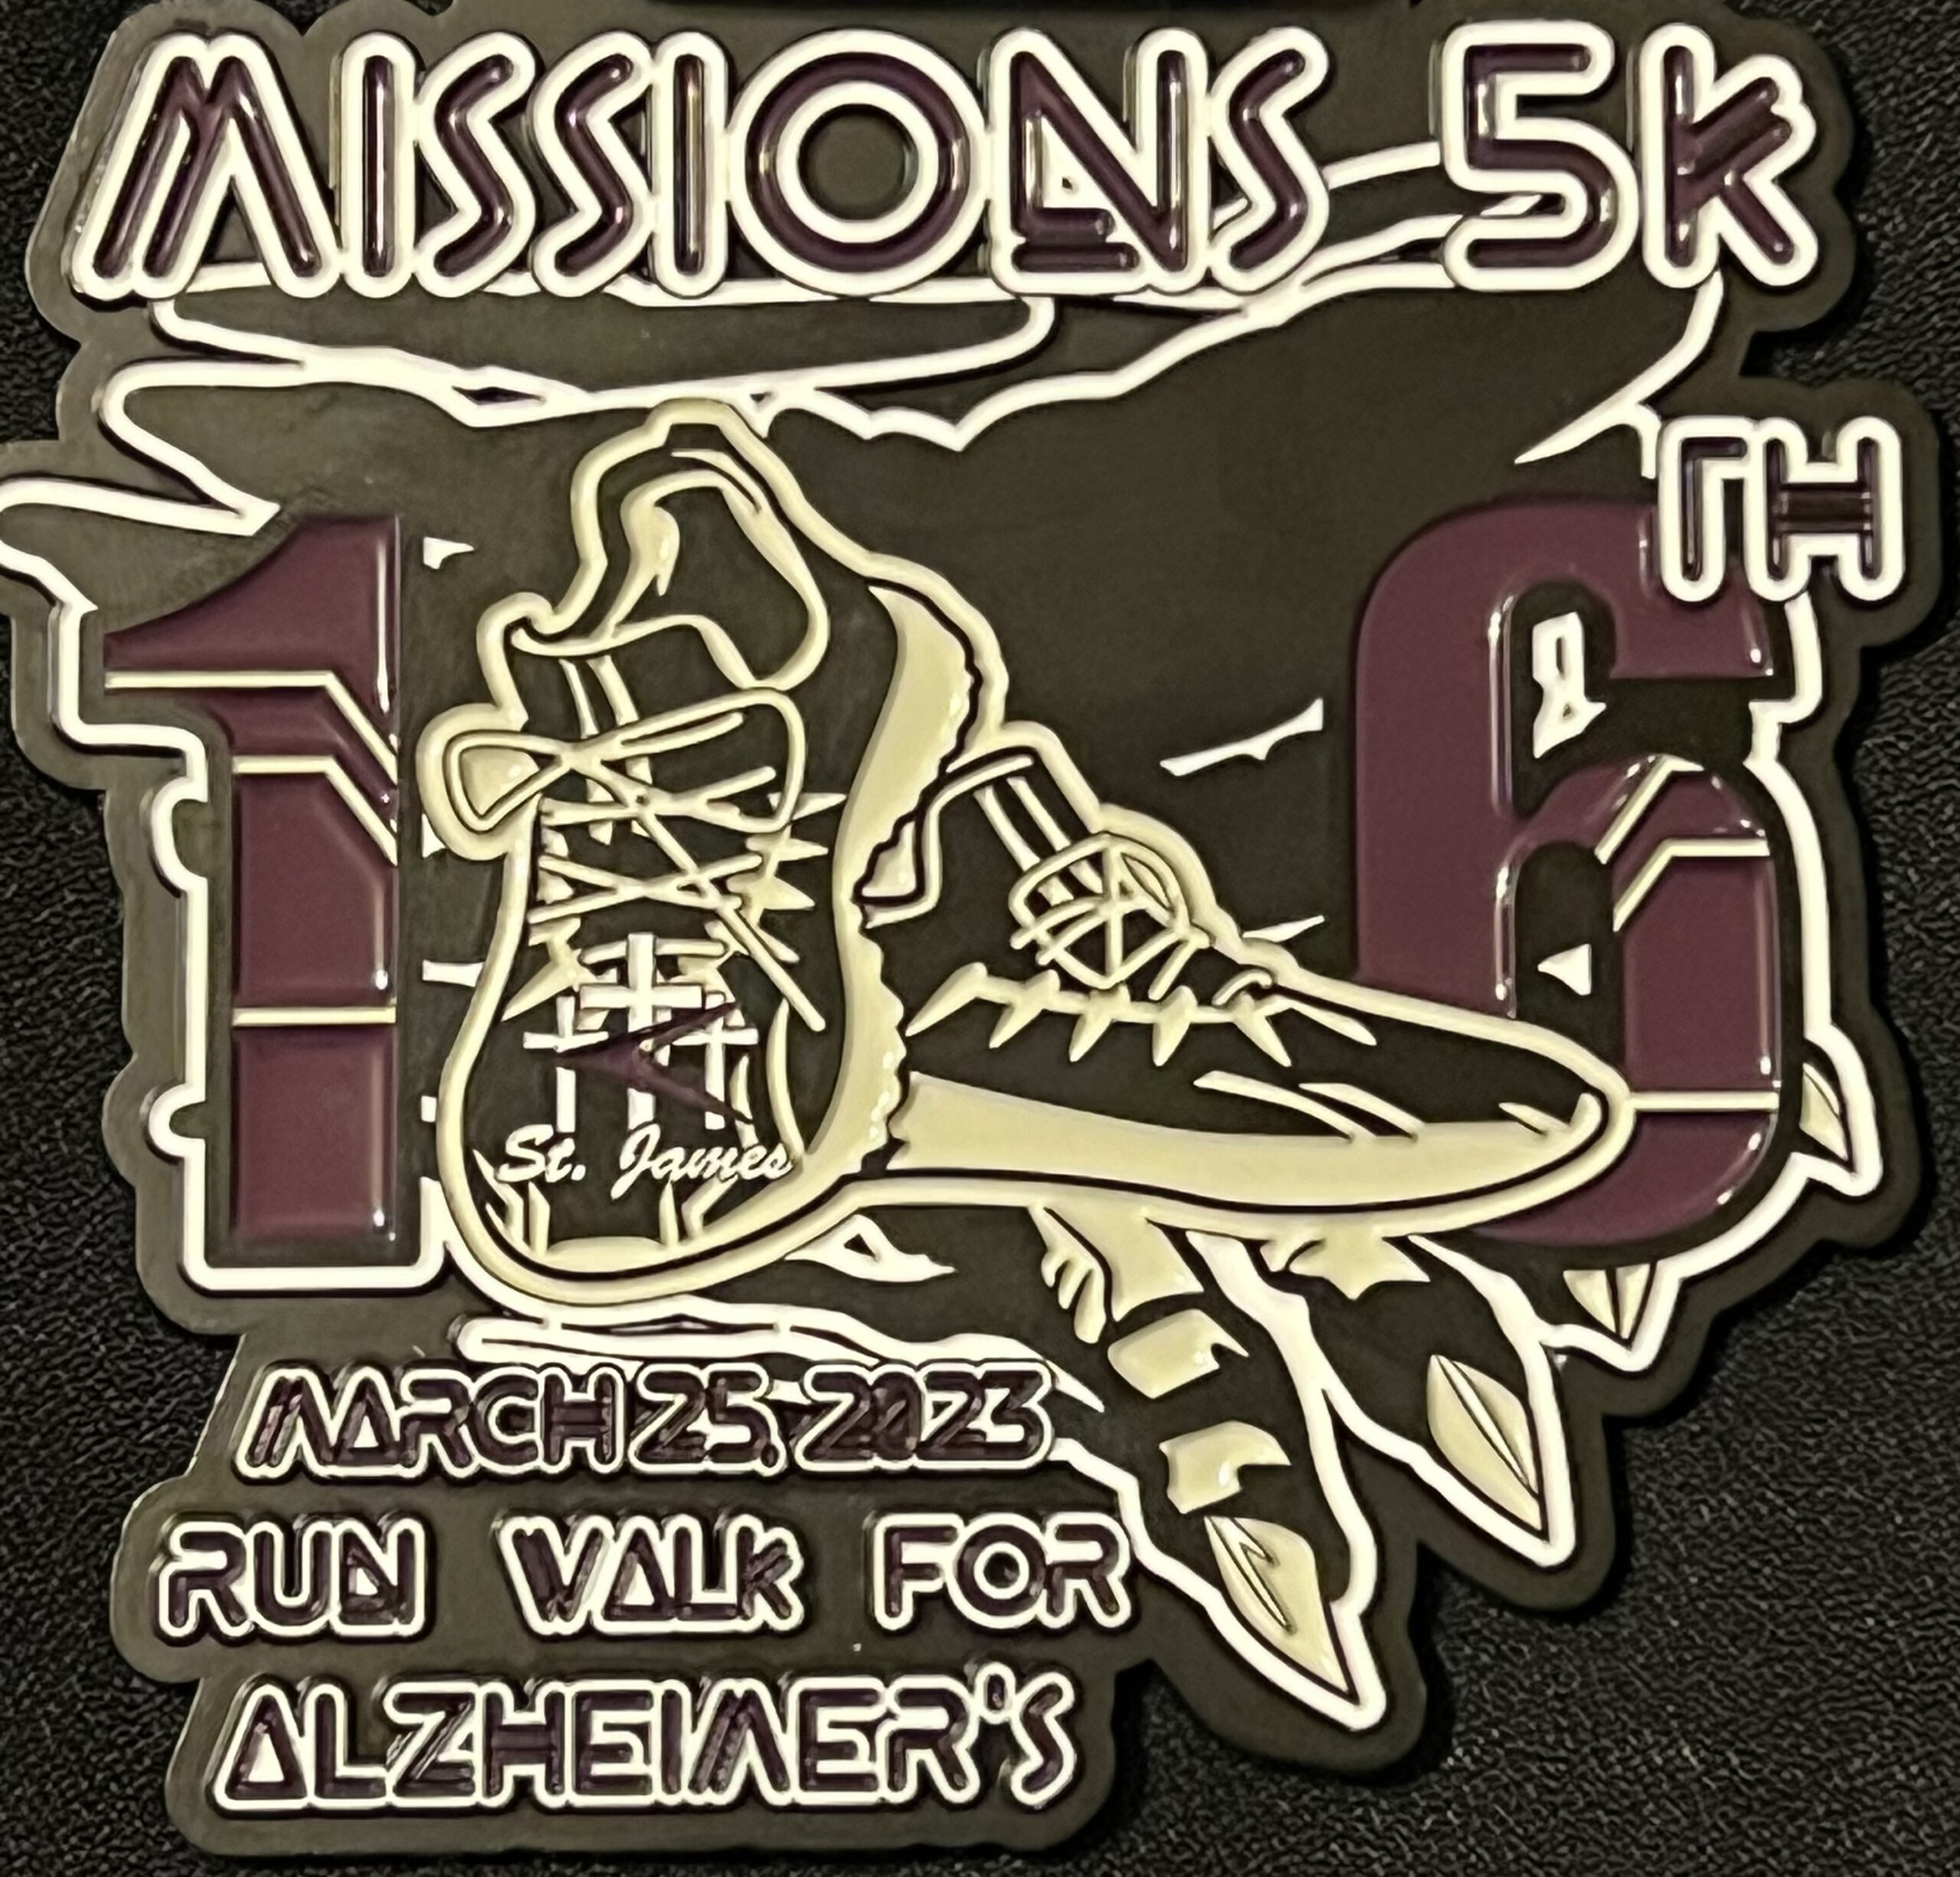 Missions 5K Run Walk for Alzheimer’s logo on RaceRaves